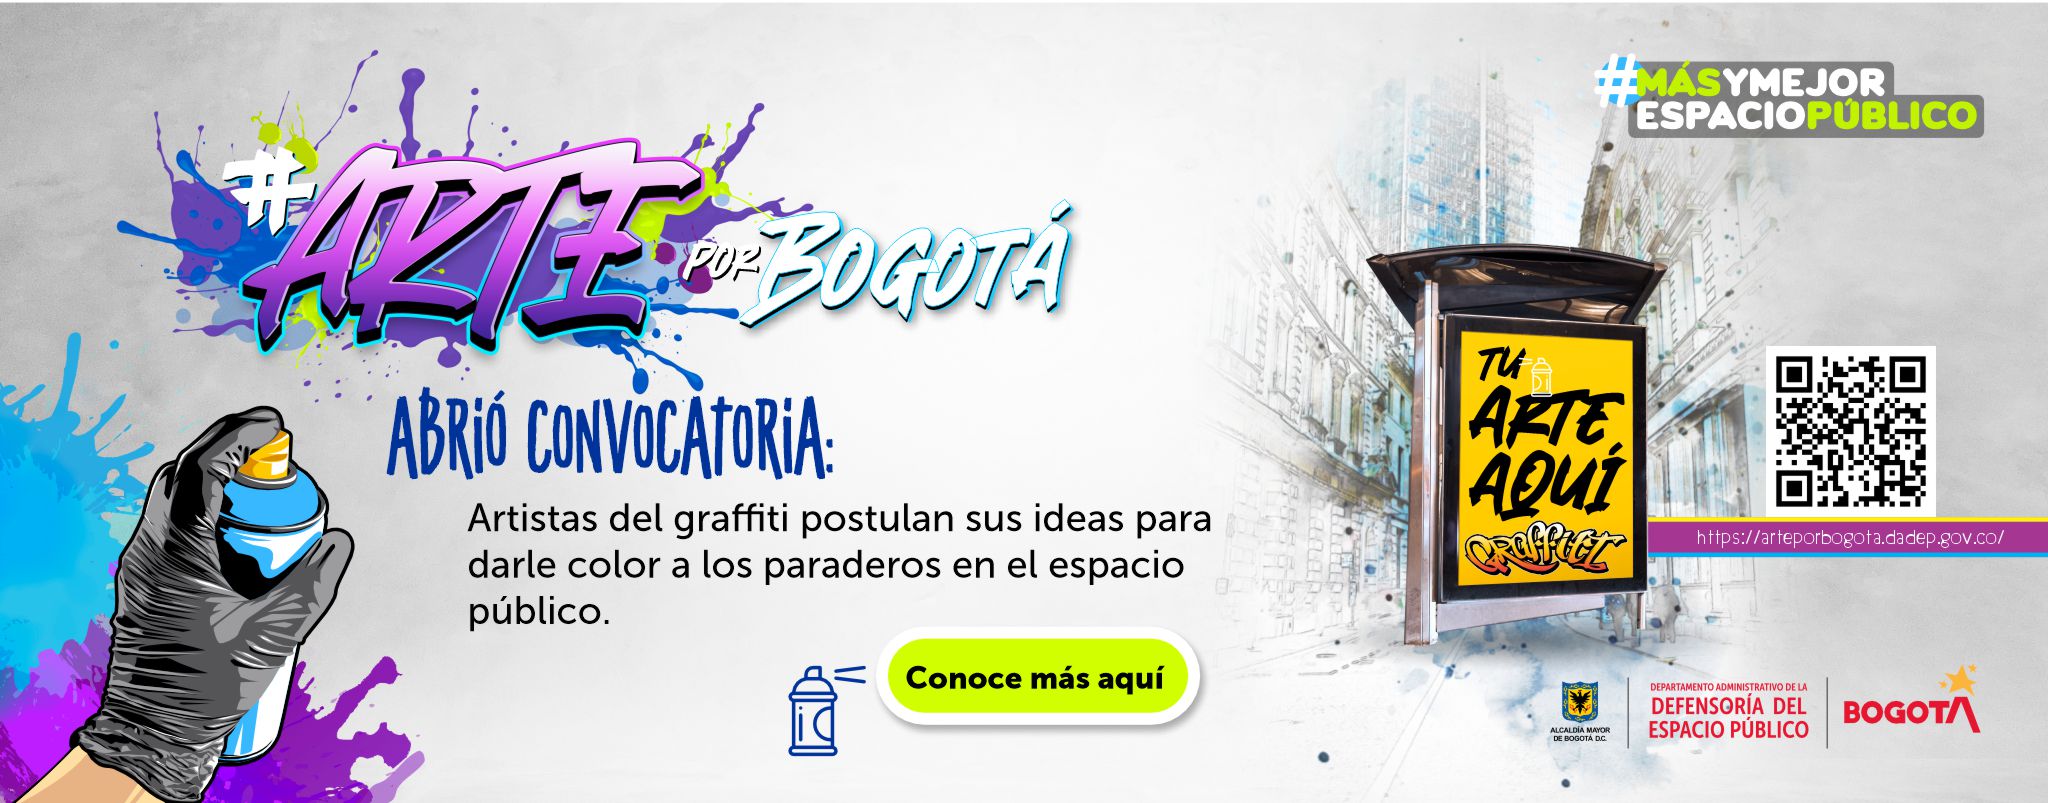 ‘Arte por Bogotá’ abrió convocatoria